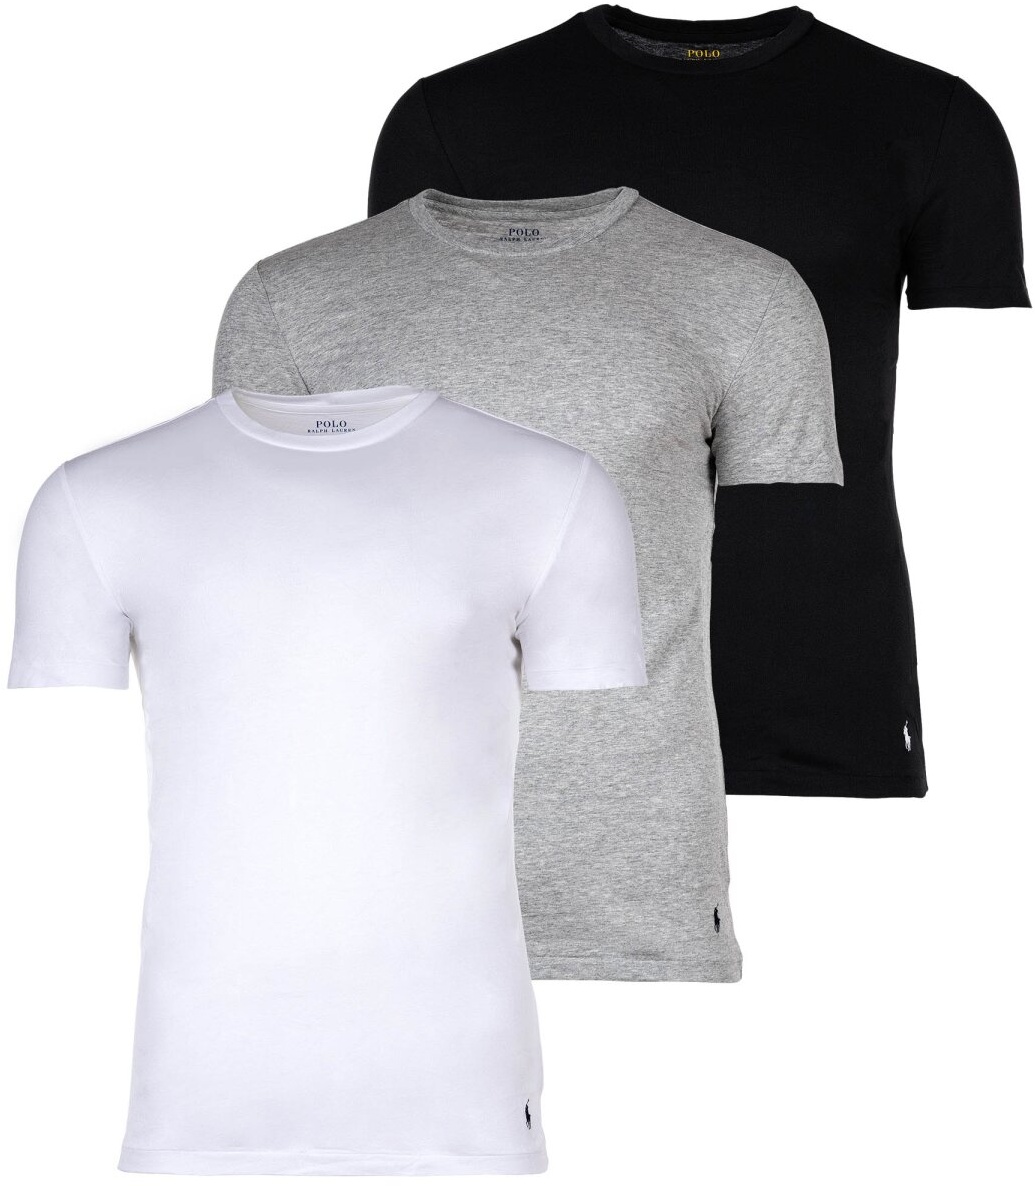 POLO RALPH LAUREN Herren T-Shirts, 3er Pack - CREW 3-PACK-CREW UNDERSHIRT, Rundhals, Baumwolle Weiß/Grau/Schwarz S